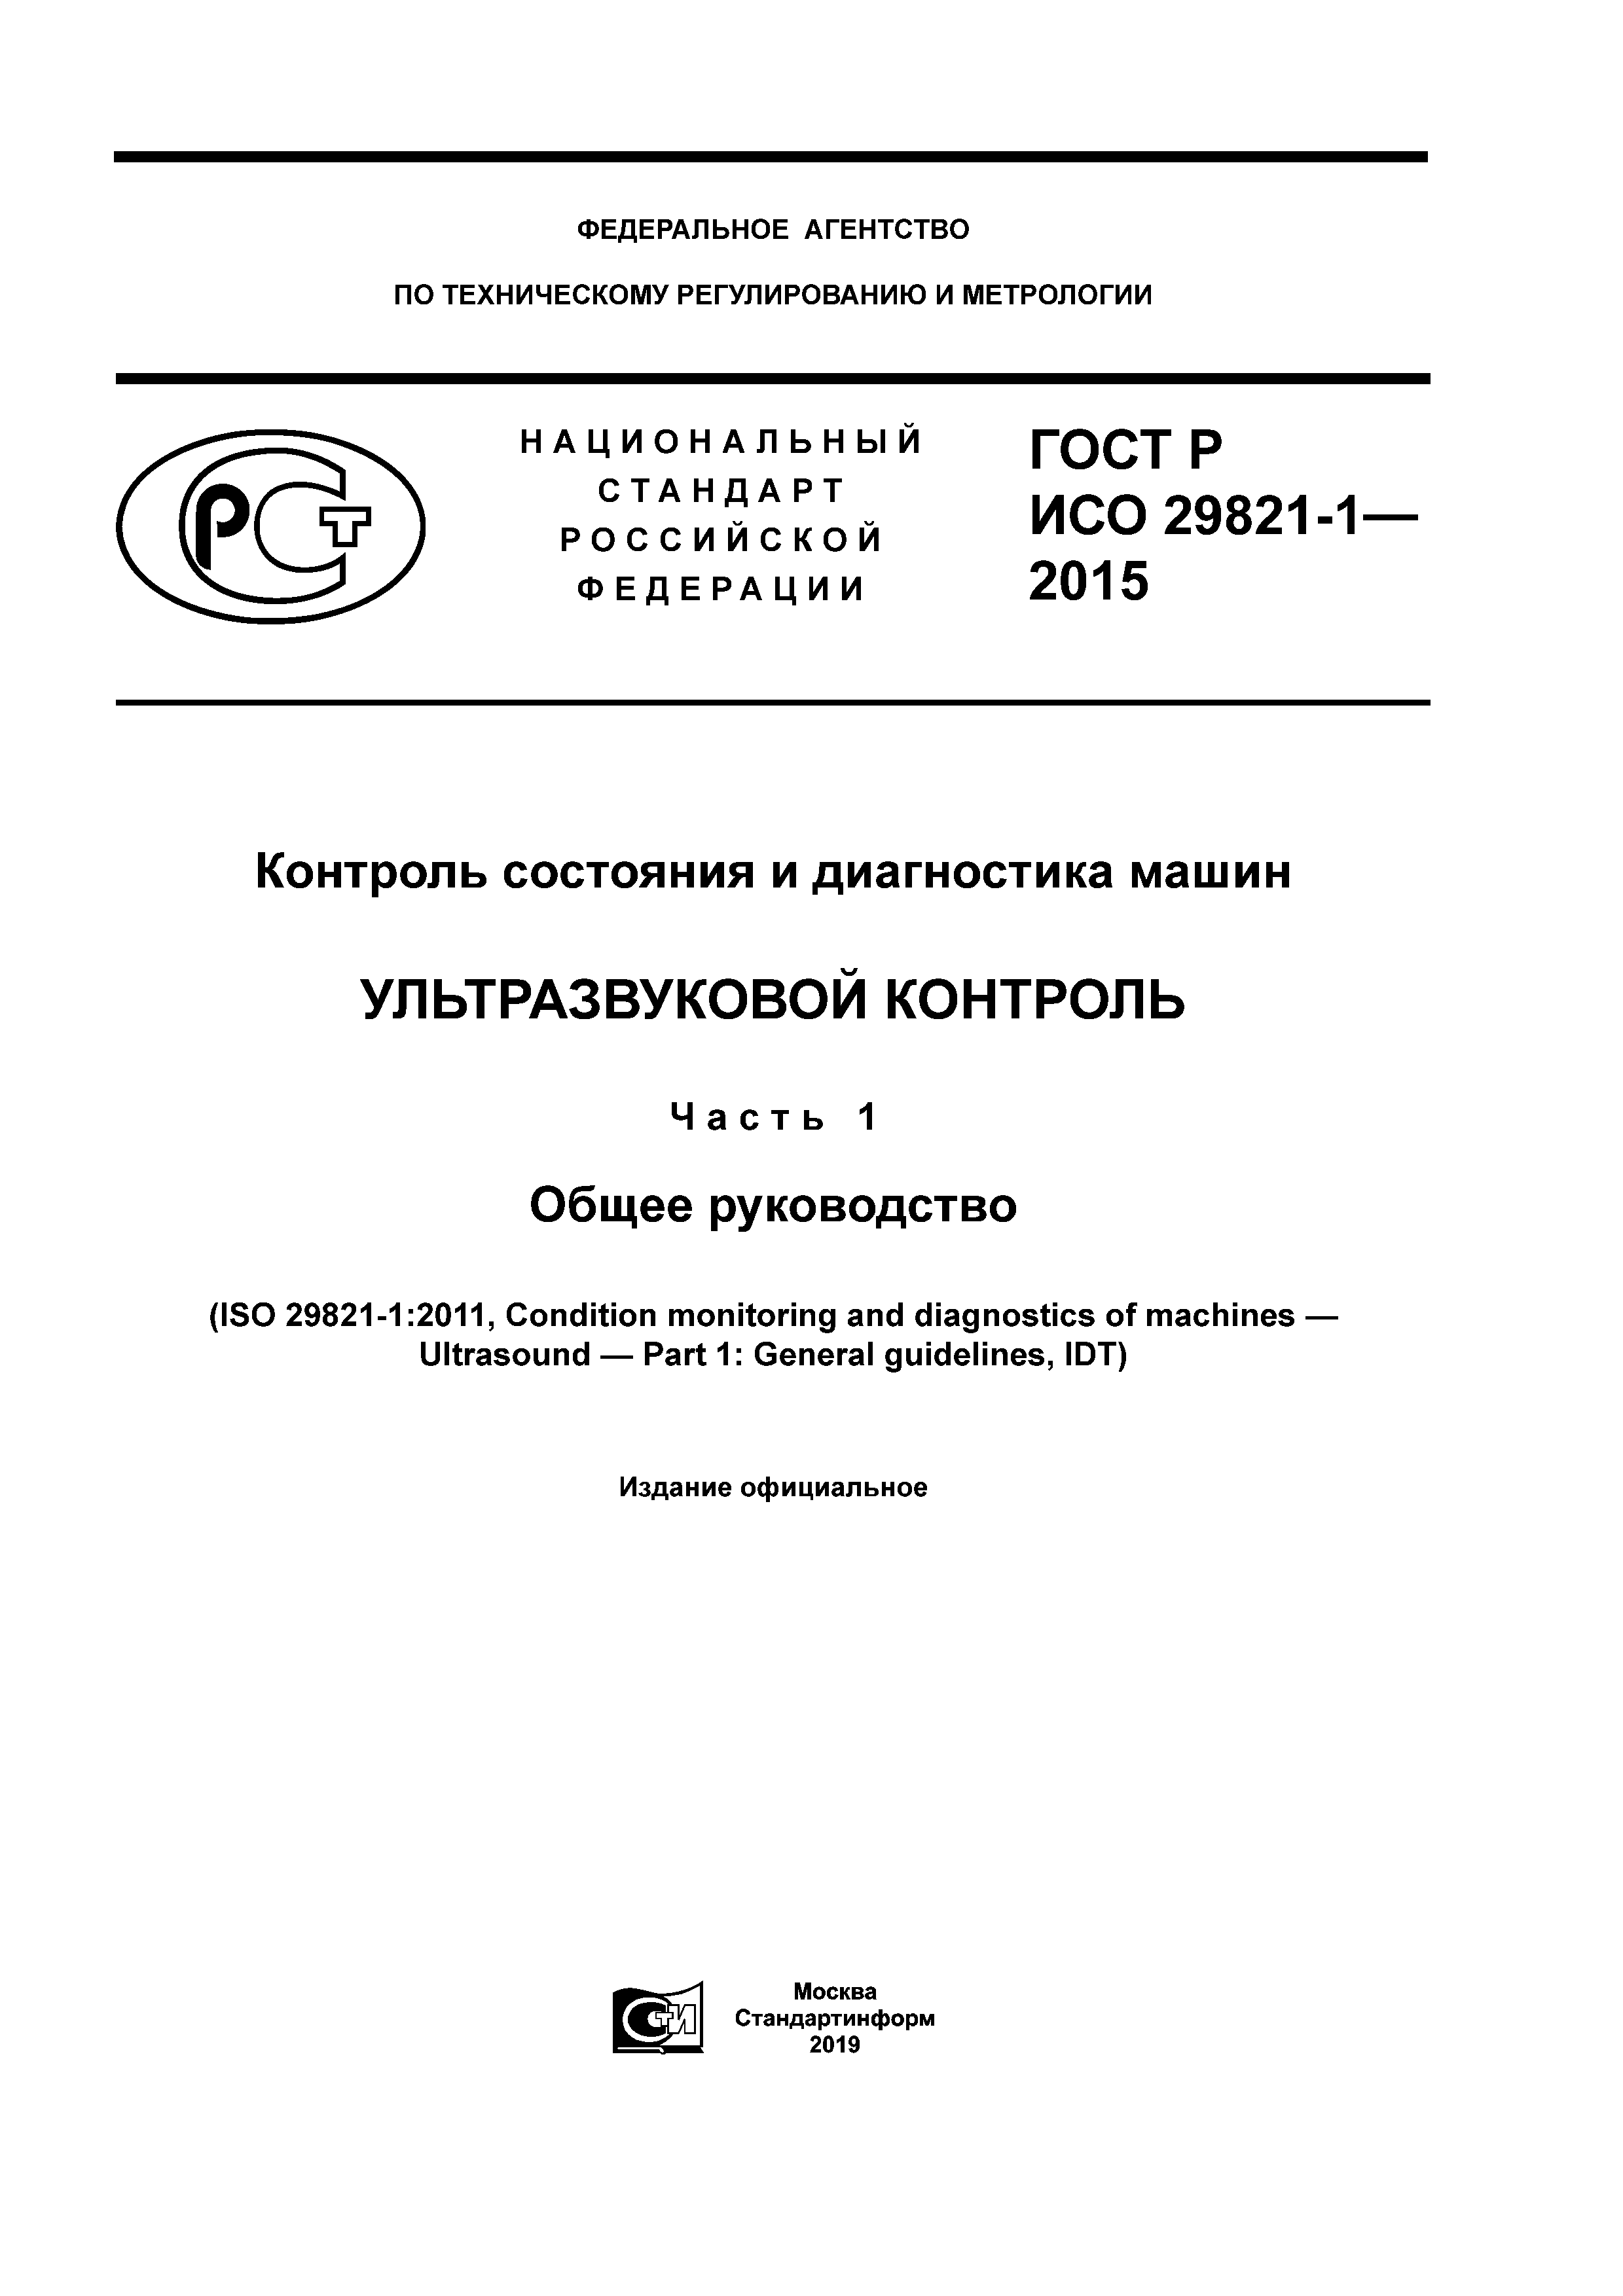 ГОСТ Р ИСО 29821-1-2015